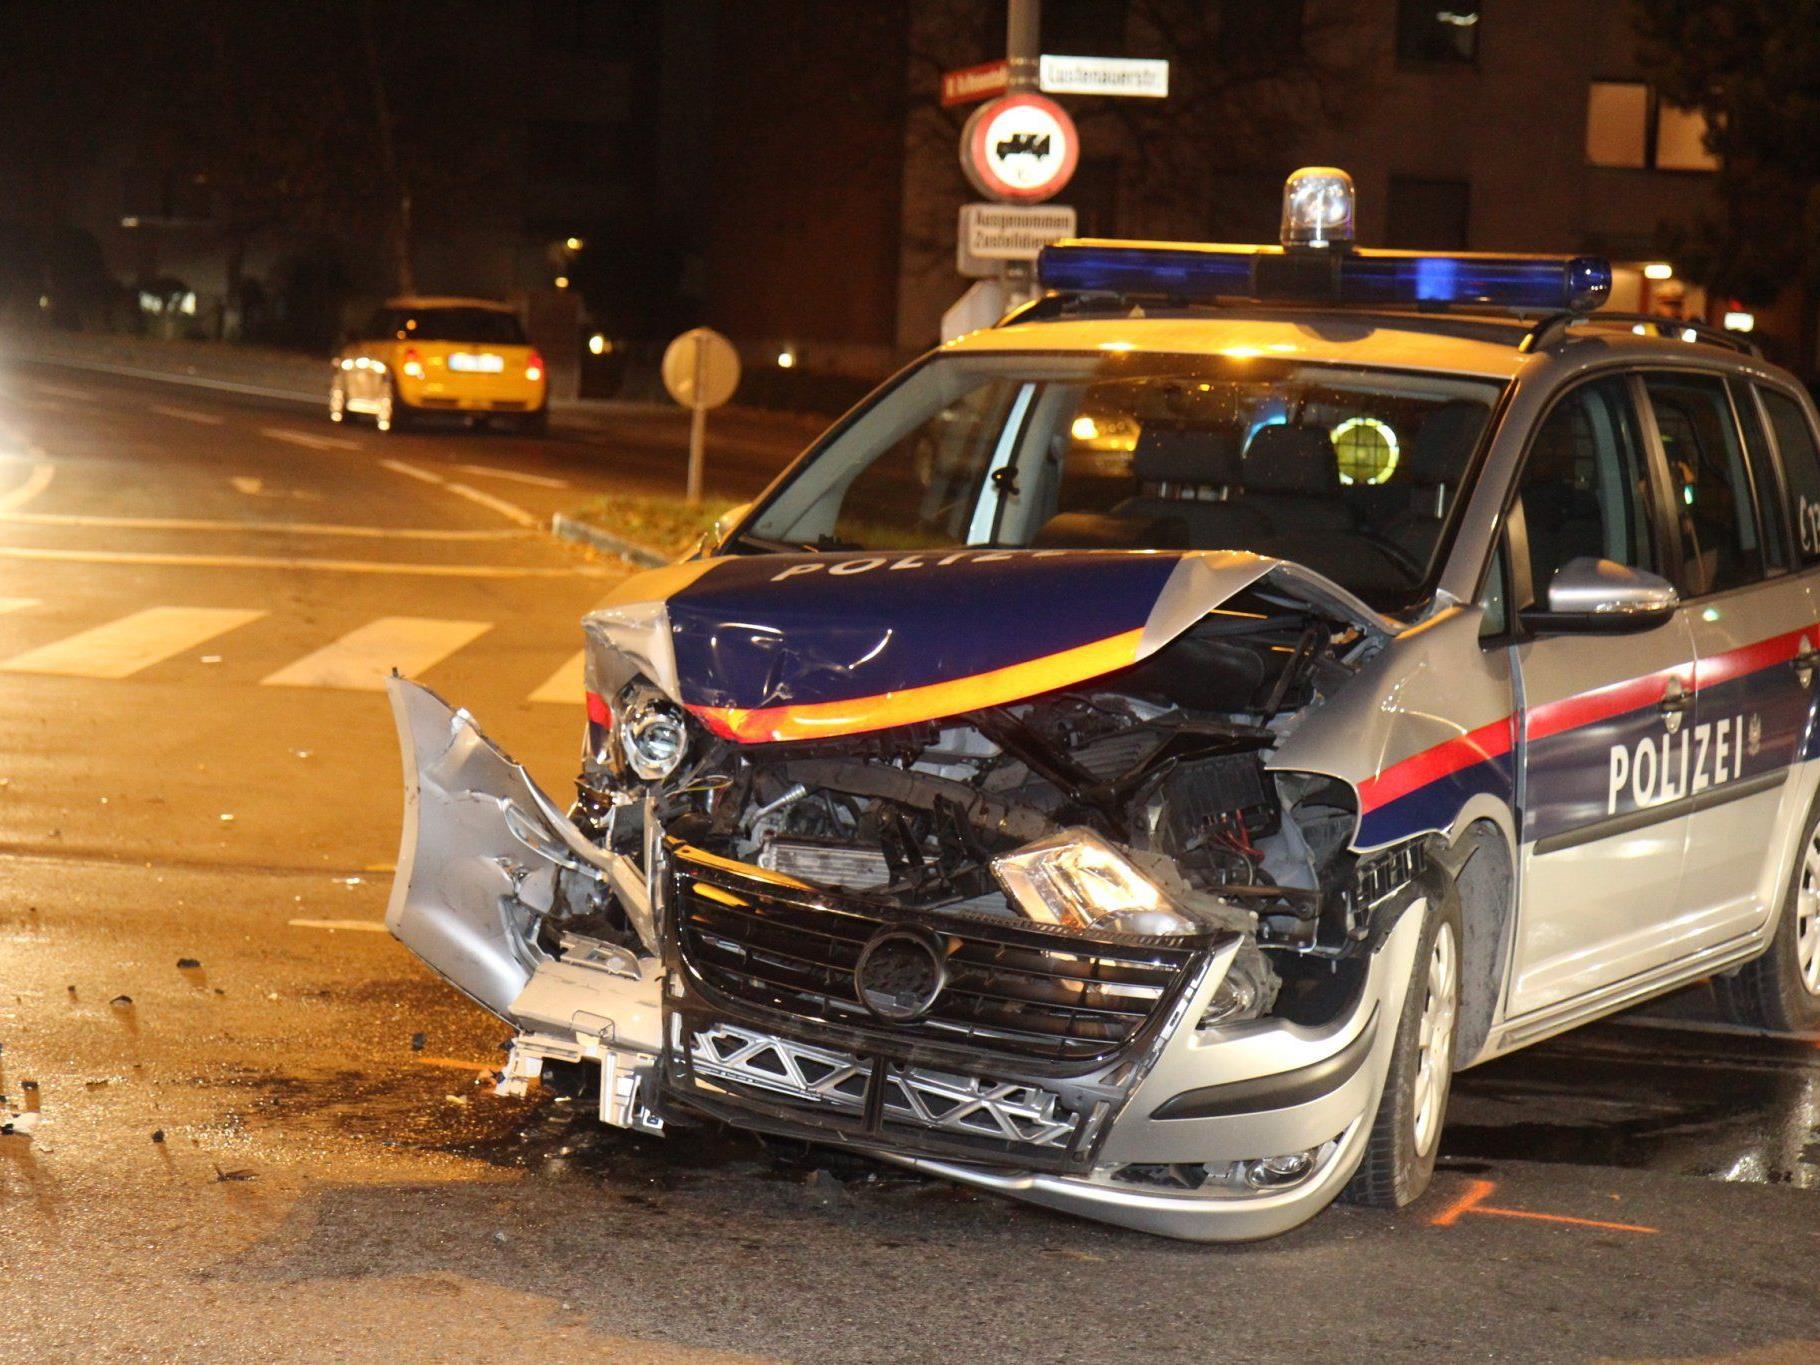 Polizeiwagen in Crash verwickelt